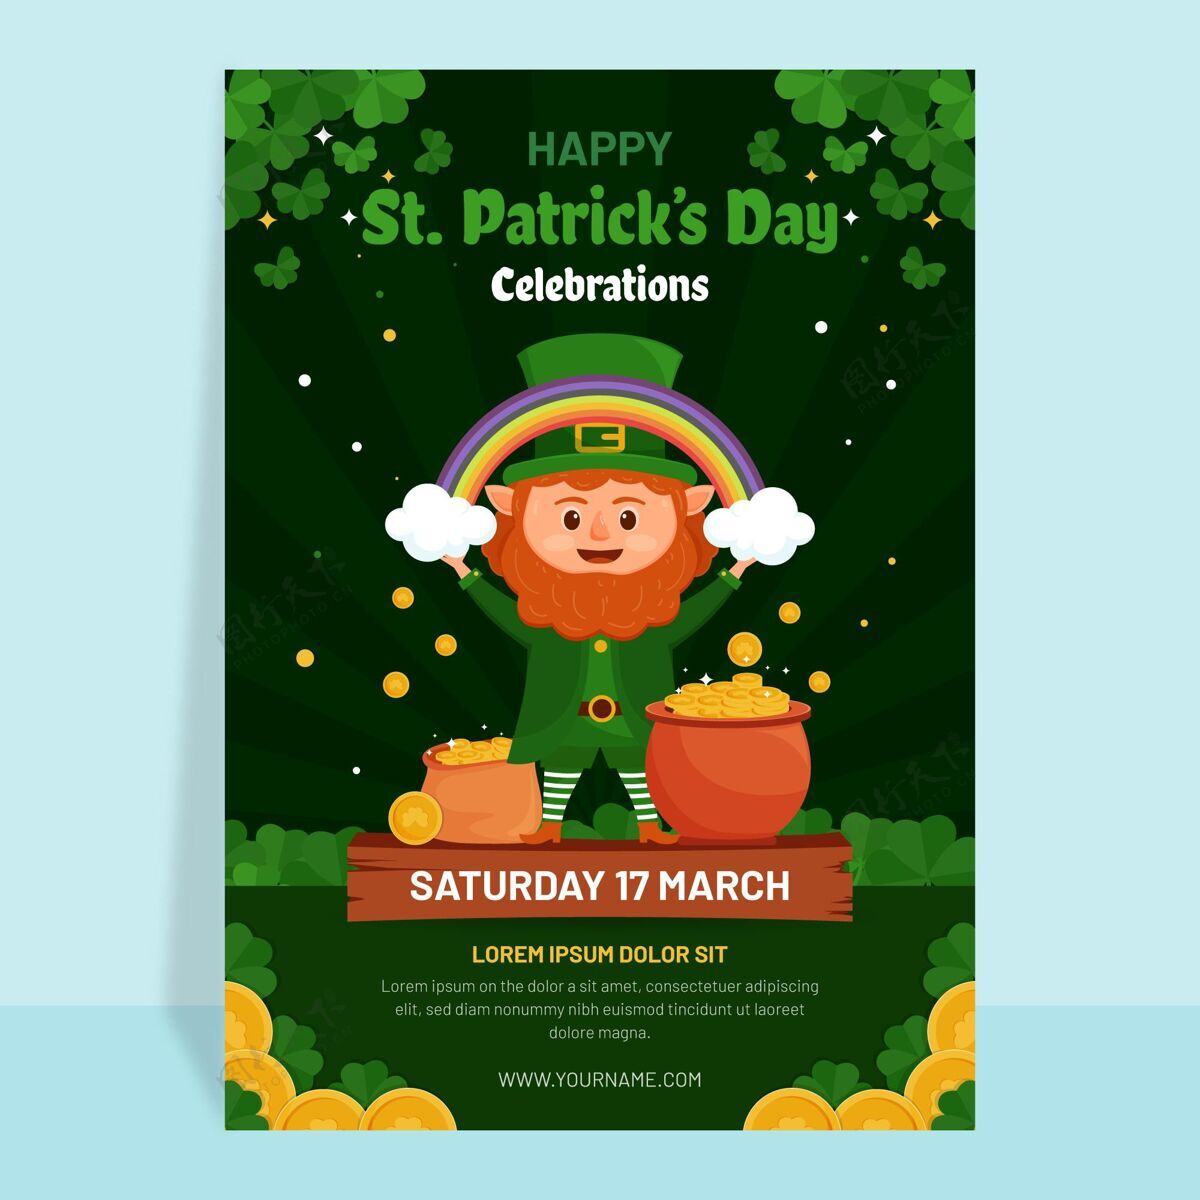 传单平面详细的圣帕特里克节传单爱尔兰春天节日